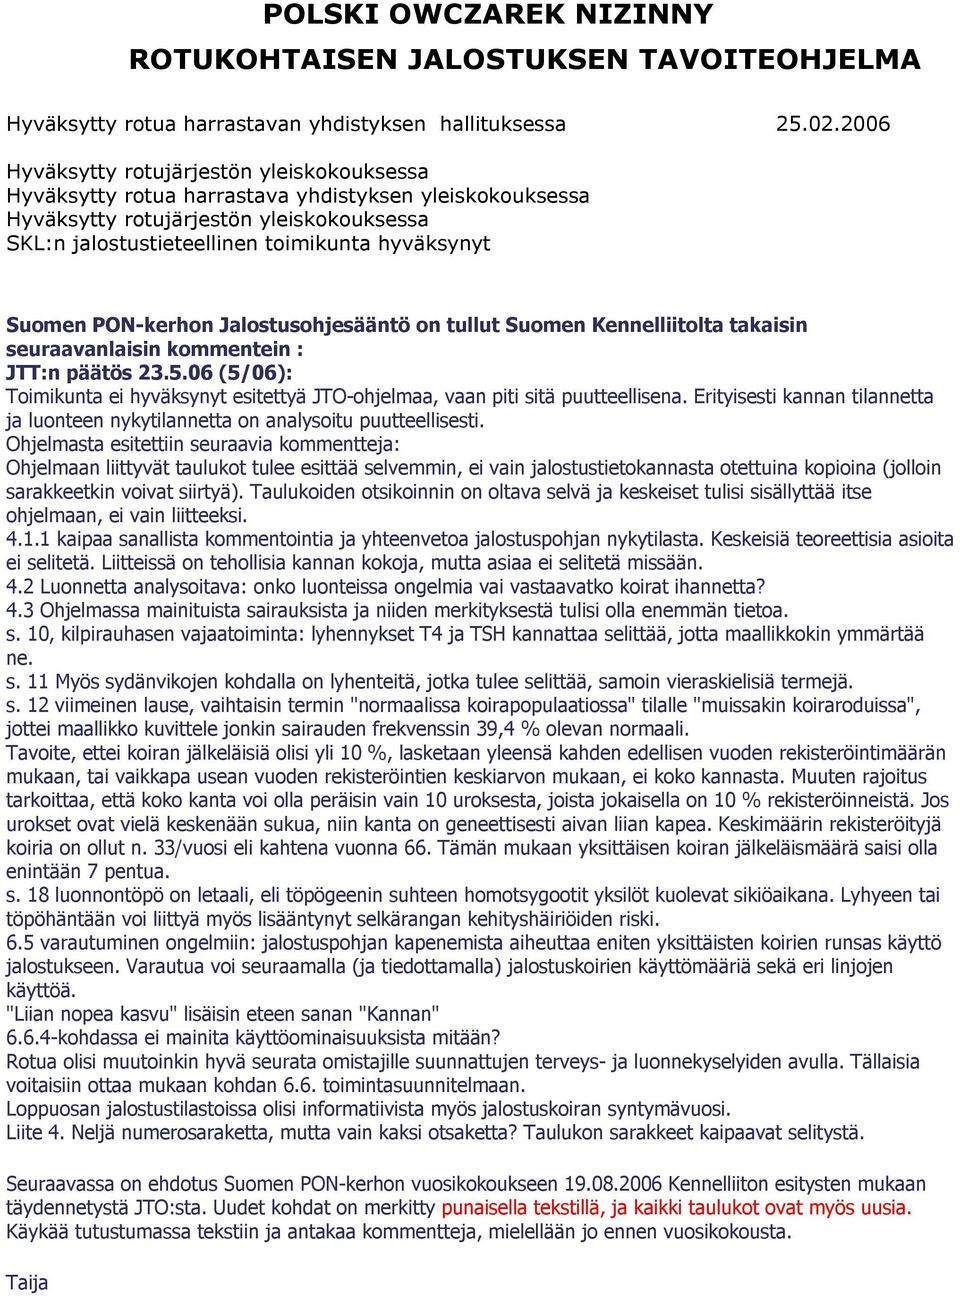 Suomen PON-kerhon Jalostusohjesääntö on tullut Suomen Kennelliitolta takaisin seuraavanlaisin kommentein : JTT:n päätös 23.5.